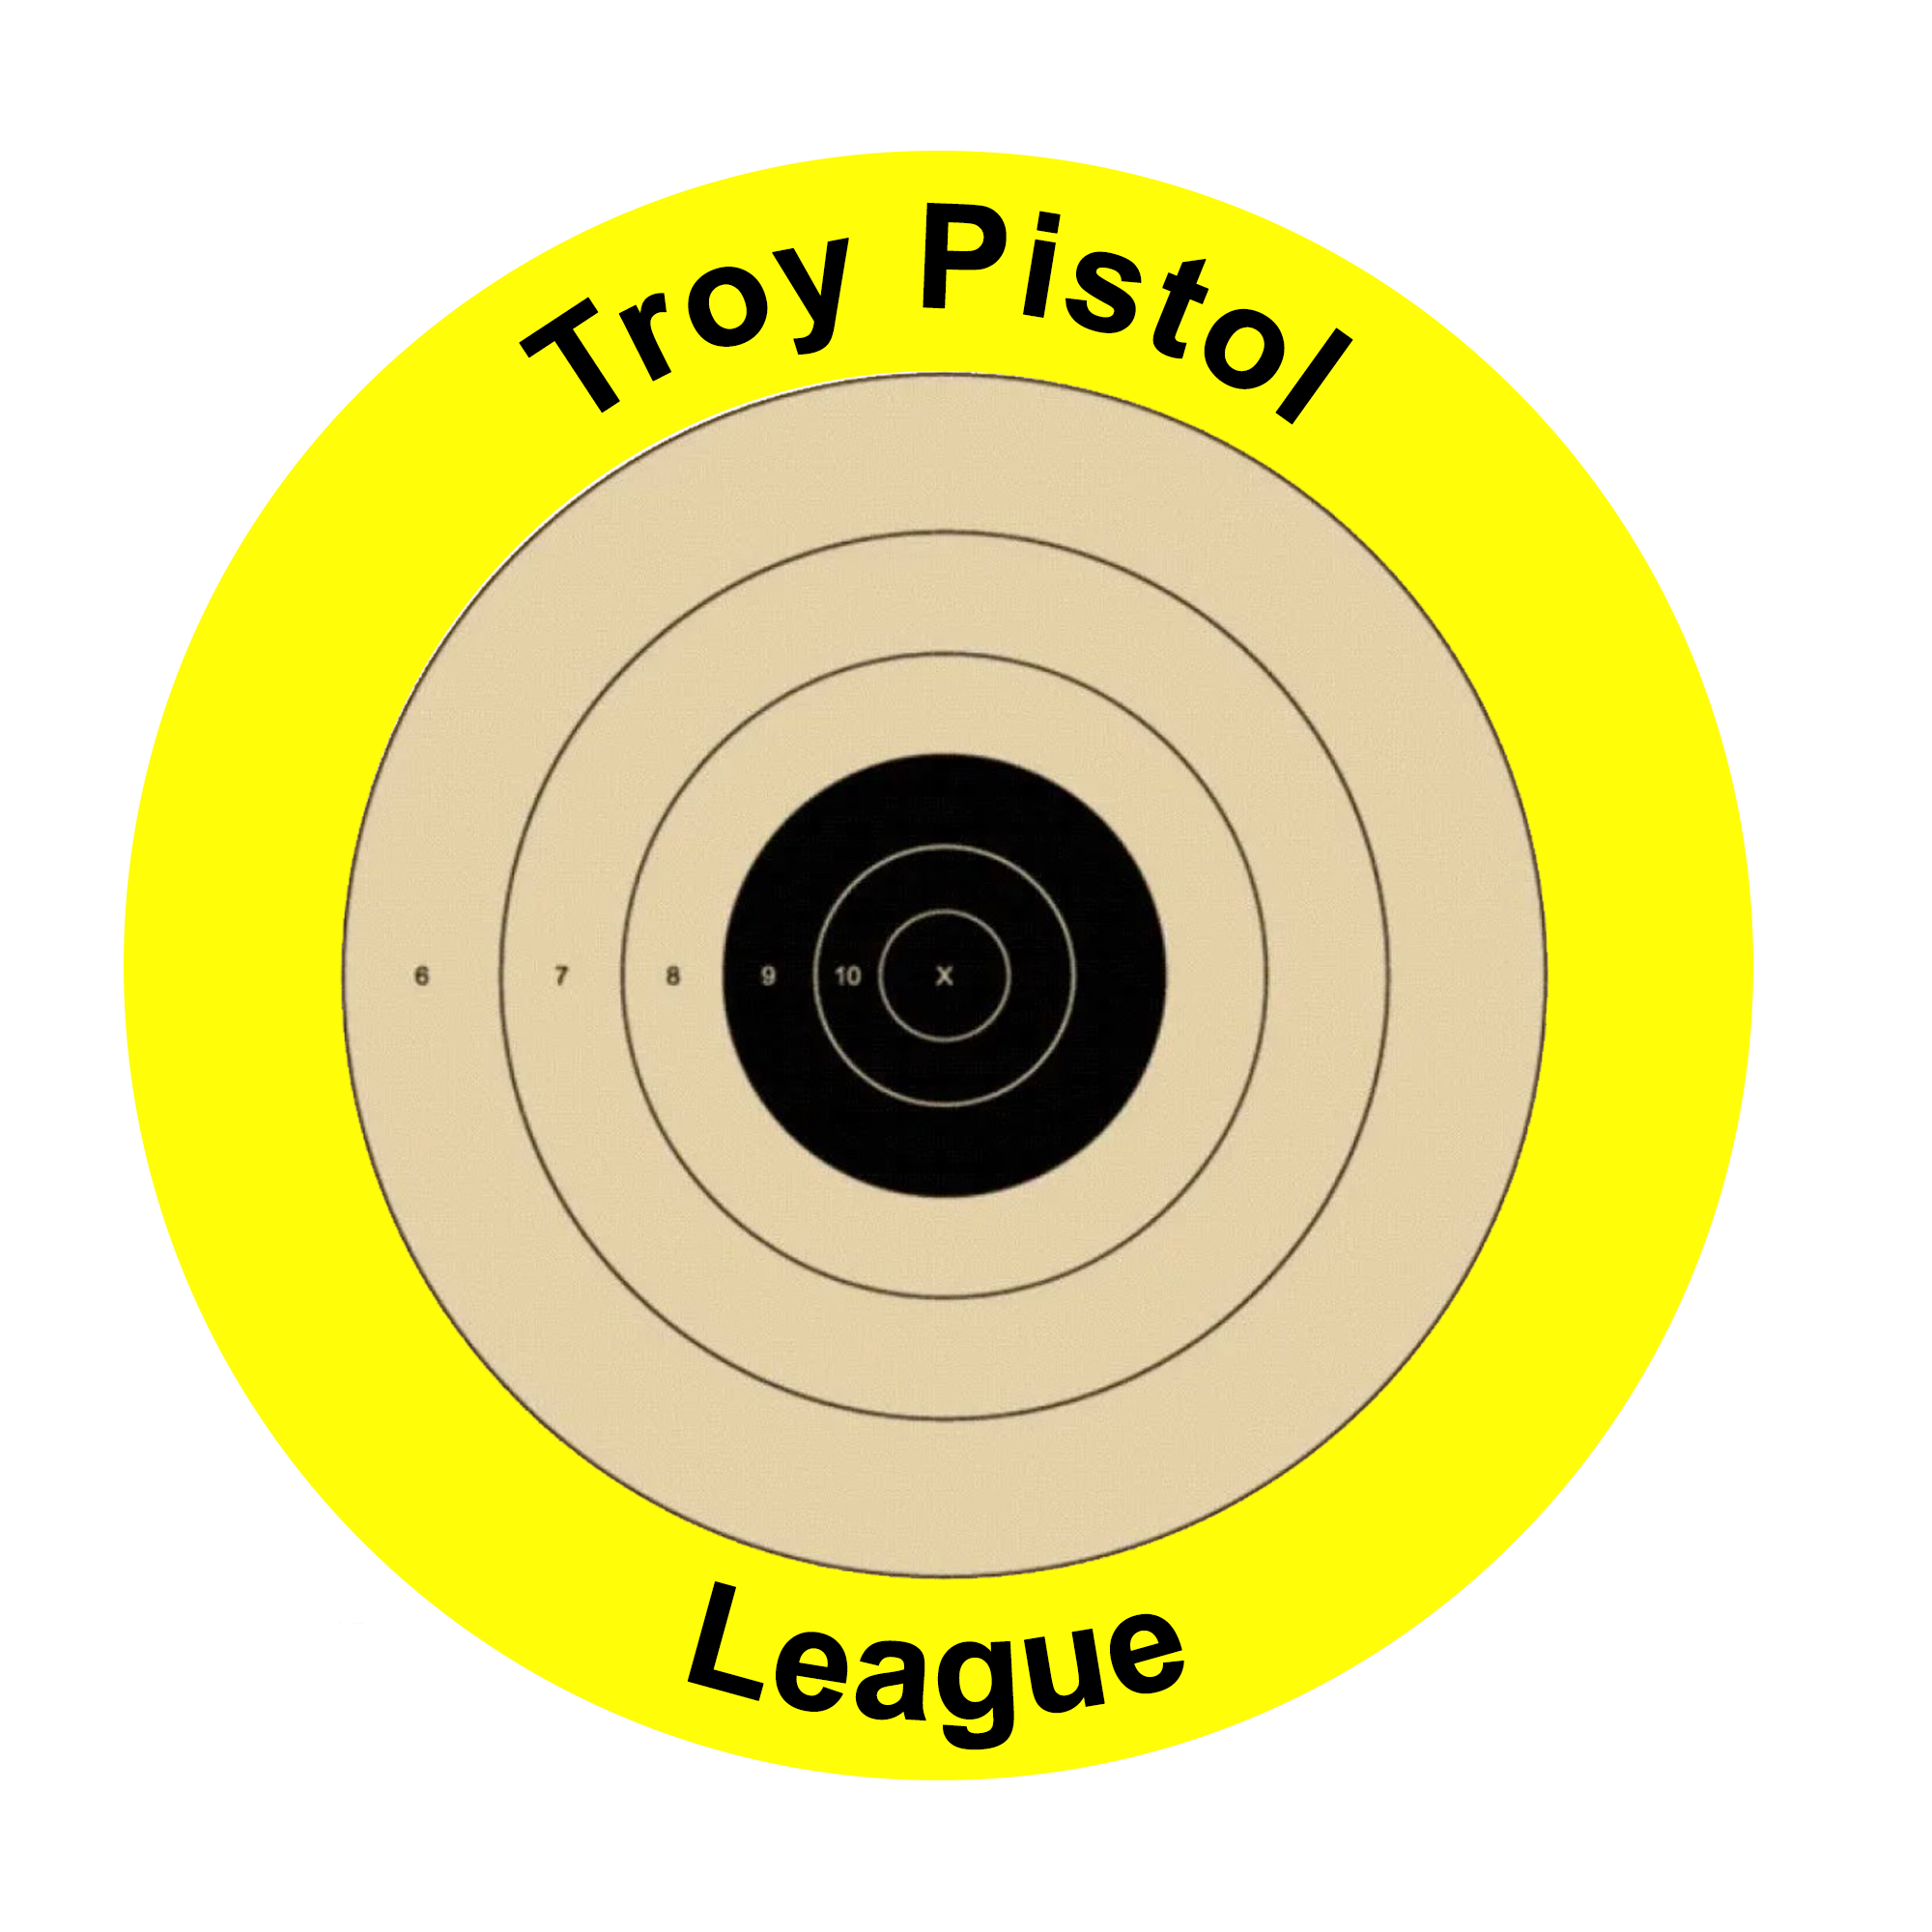 Troy Pistol League